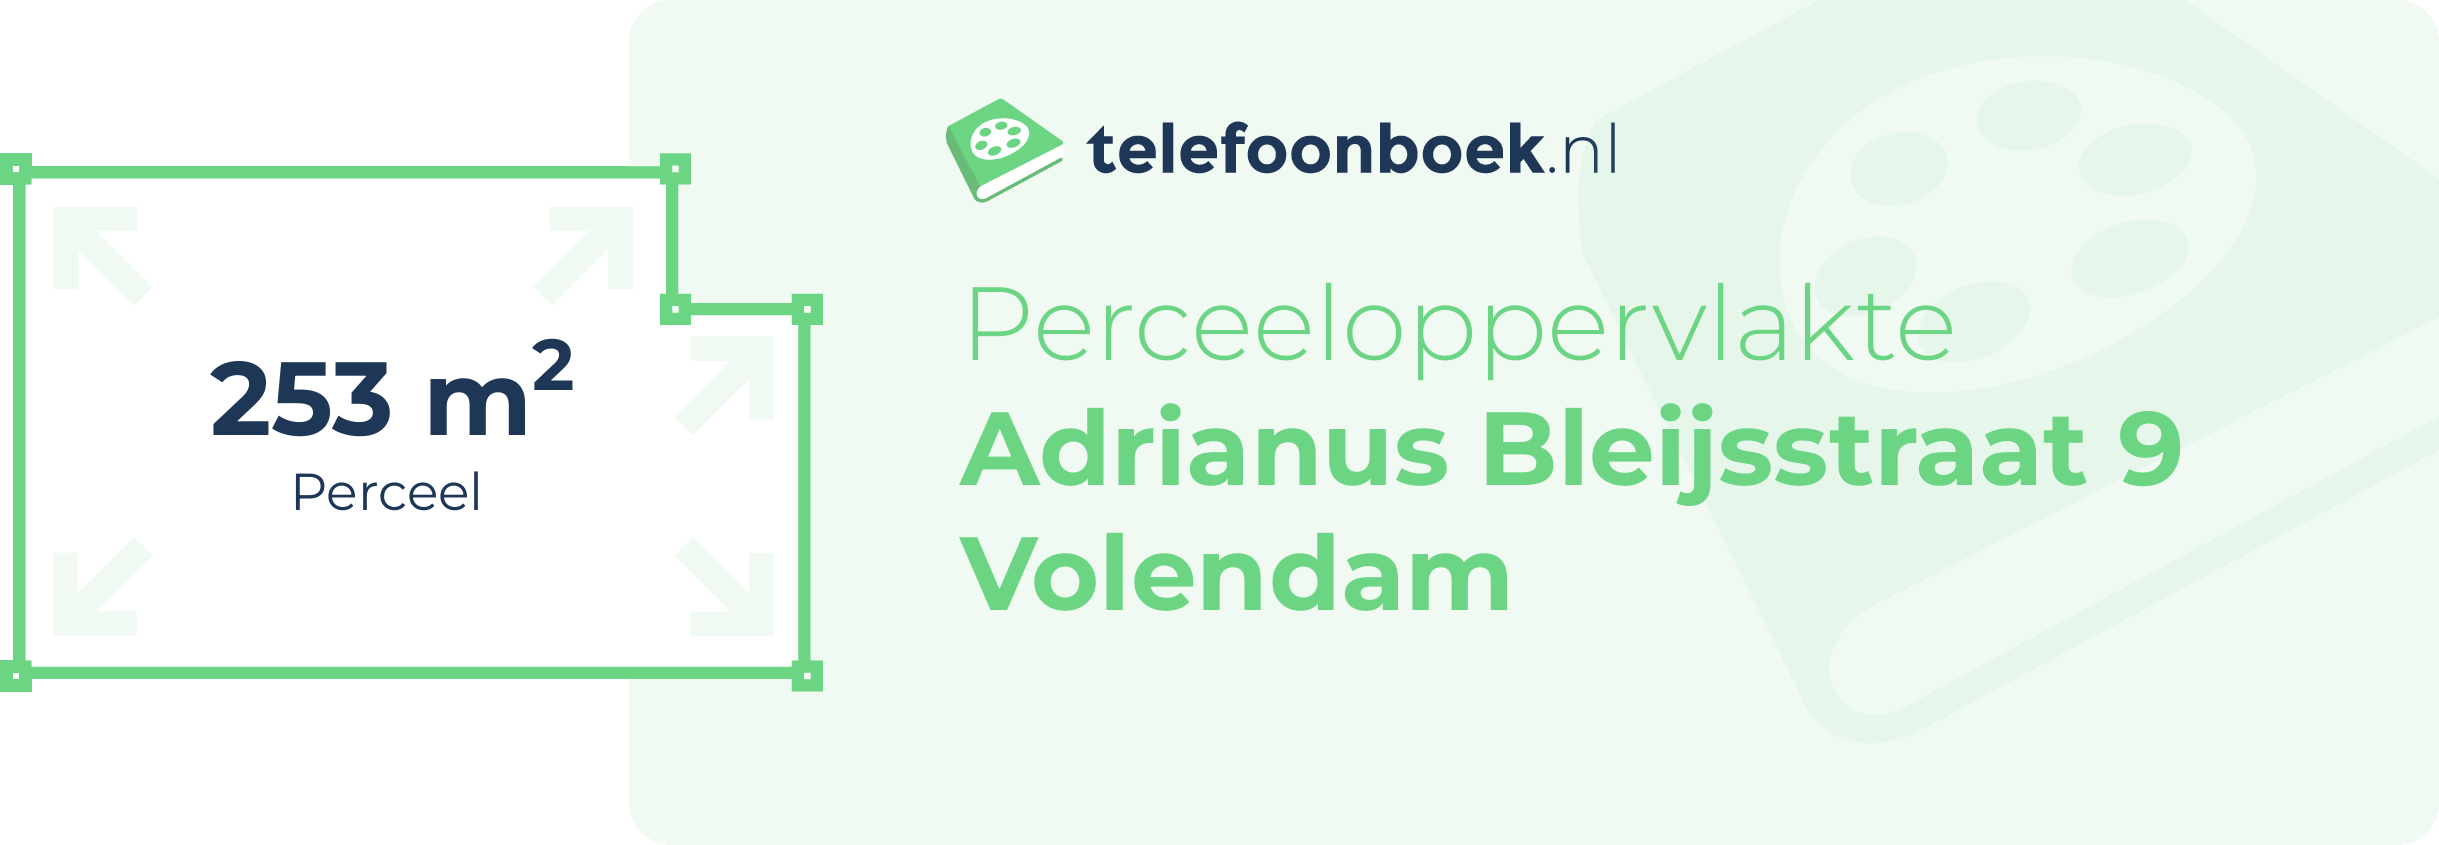 Perceeloppervlakte Adrianus Bleijsstraat 9 Volendam